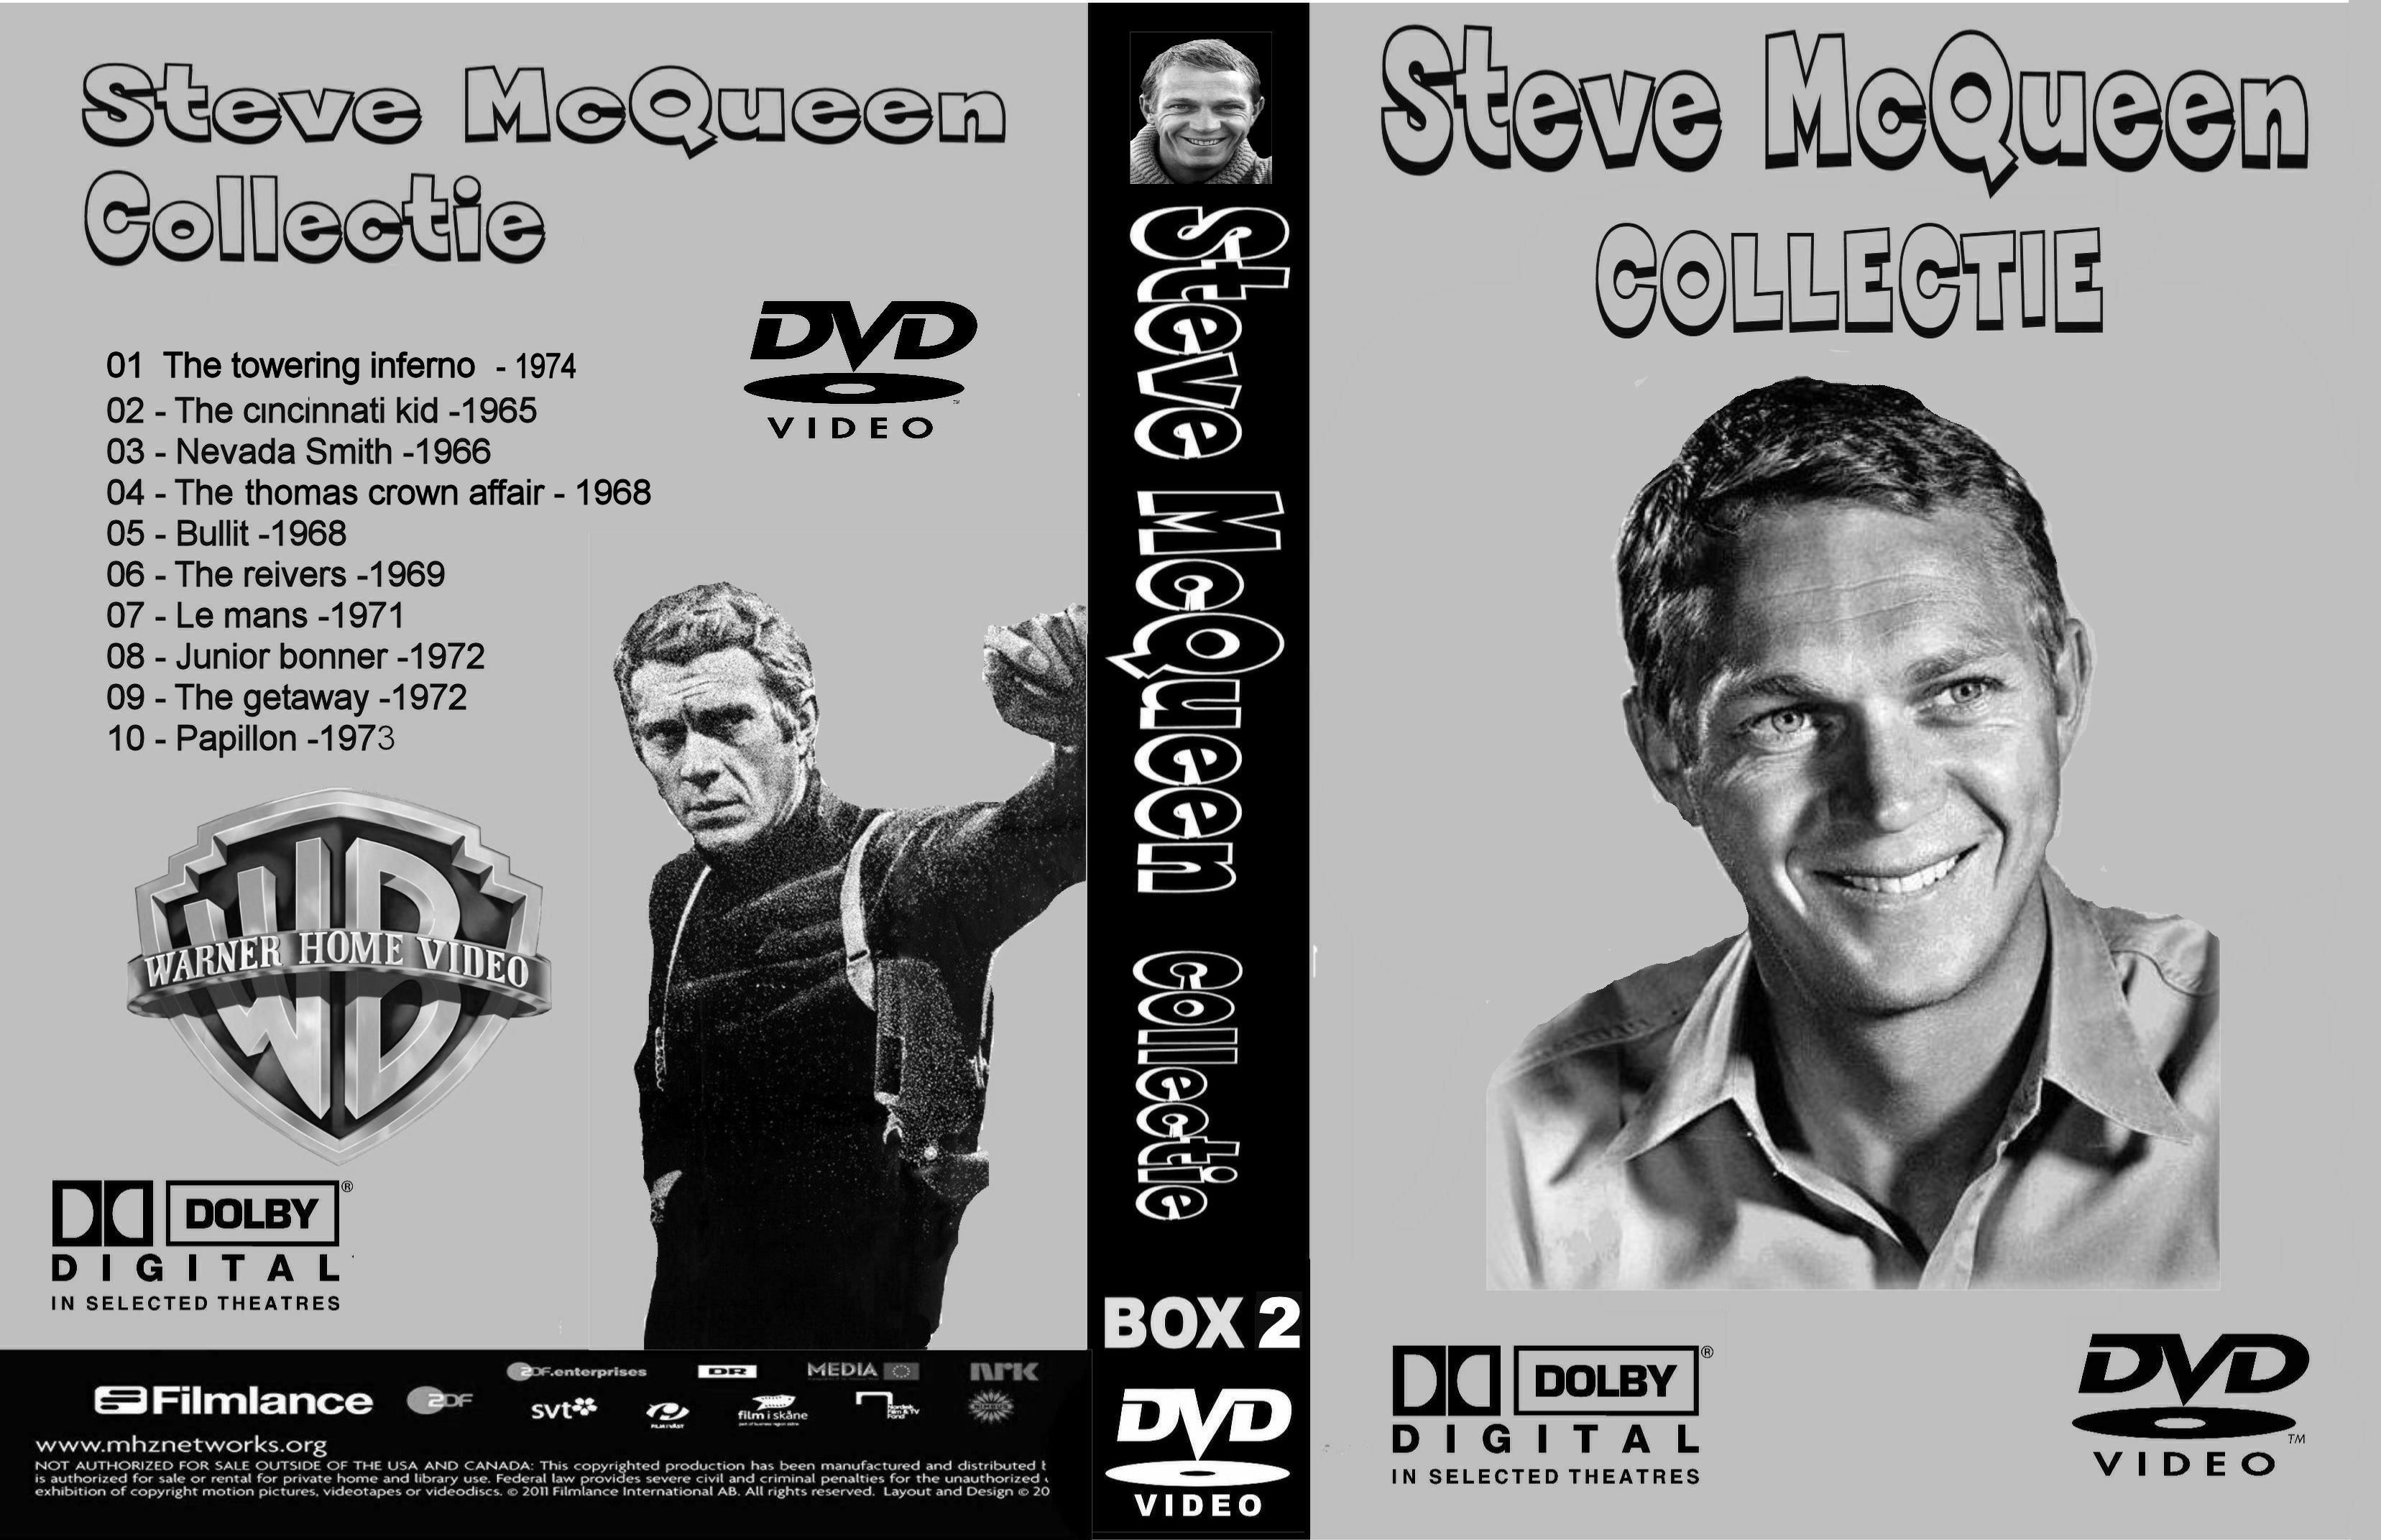 Steve McQueen Collectie Box 2 vd 7 van 10